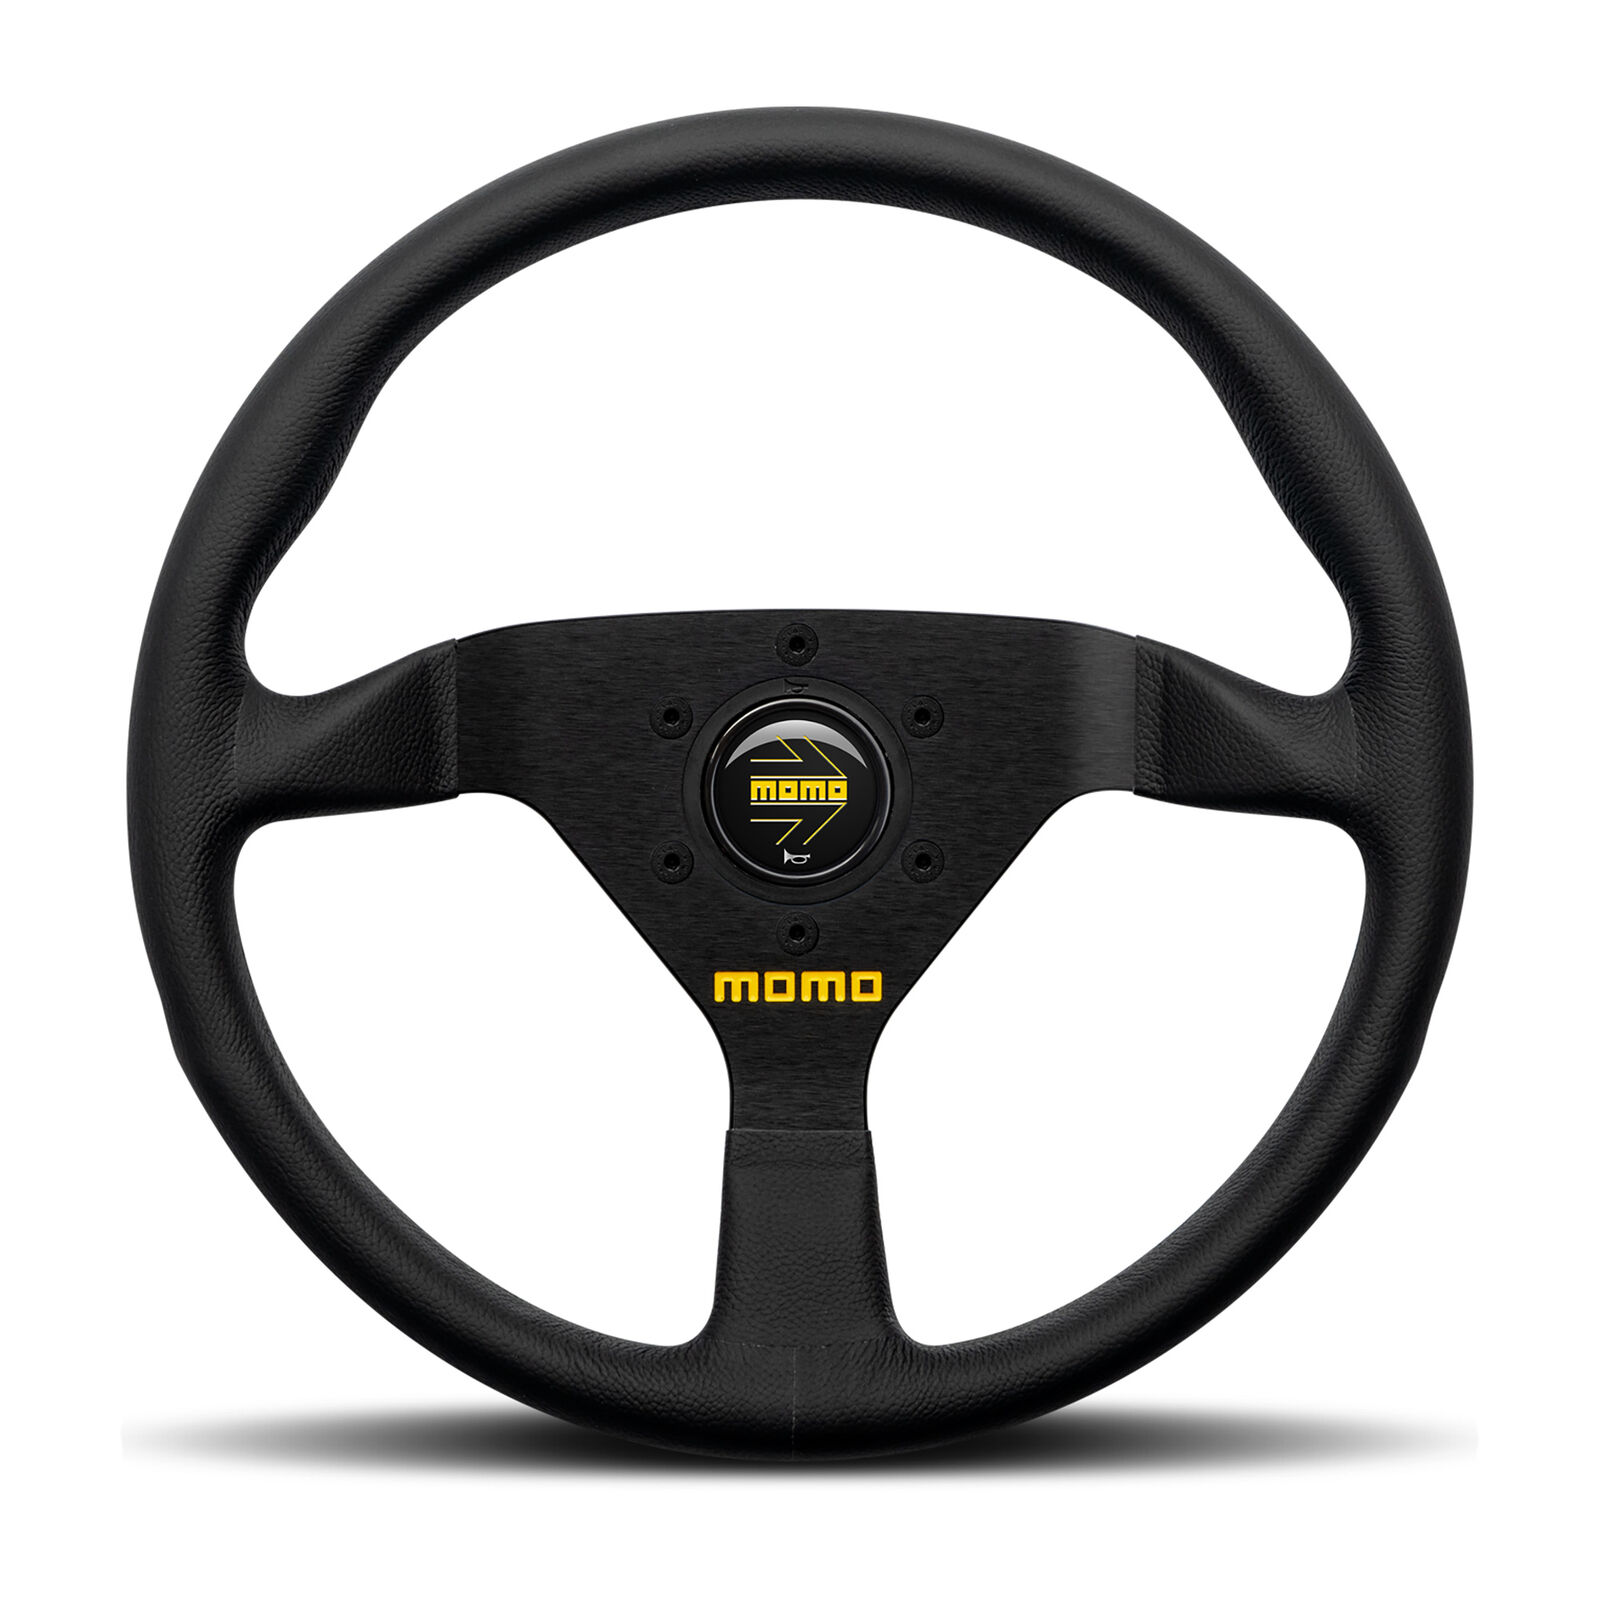 MOMO Motorsport MOD. 78 Racing Steering Wheel, Black Leather, 320mm - R1909/33L